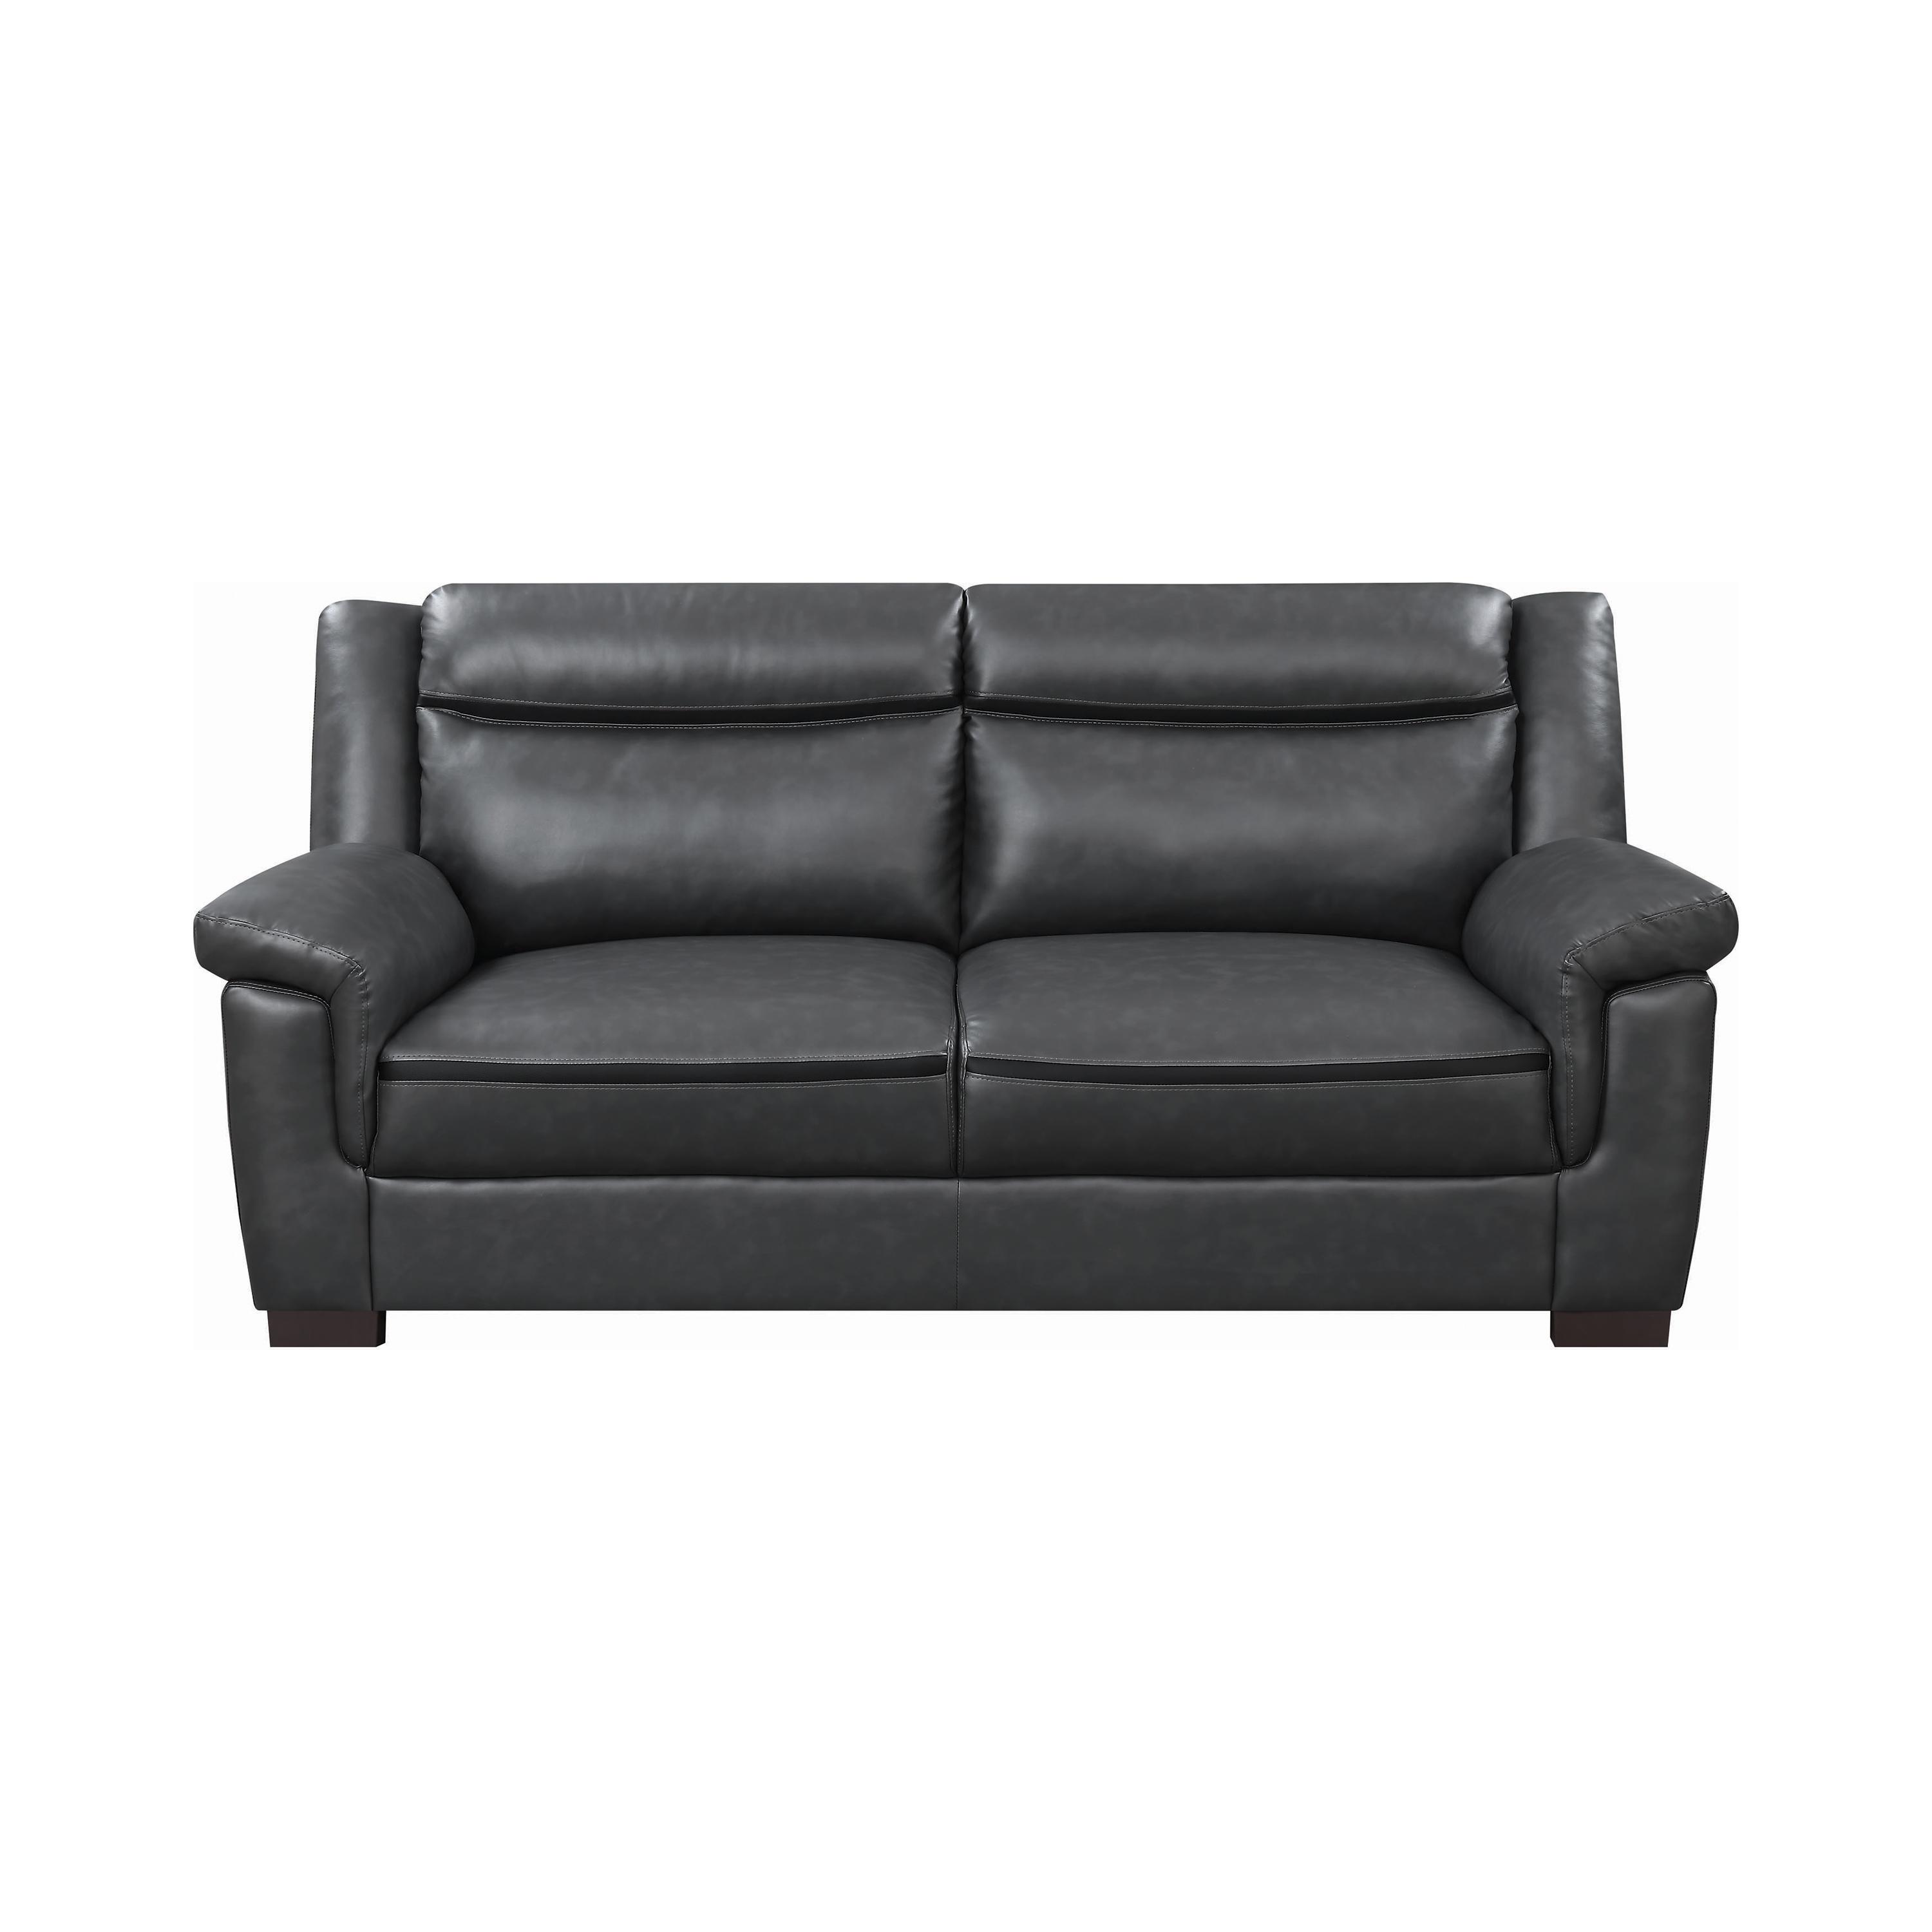 Contemporary Sofa 506591 Arabella 506591 in Gray Leatherette